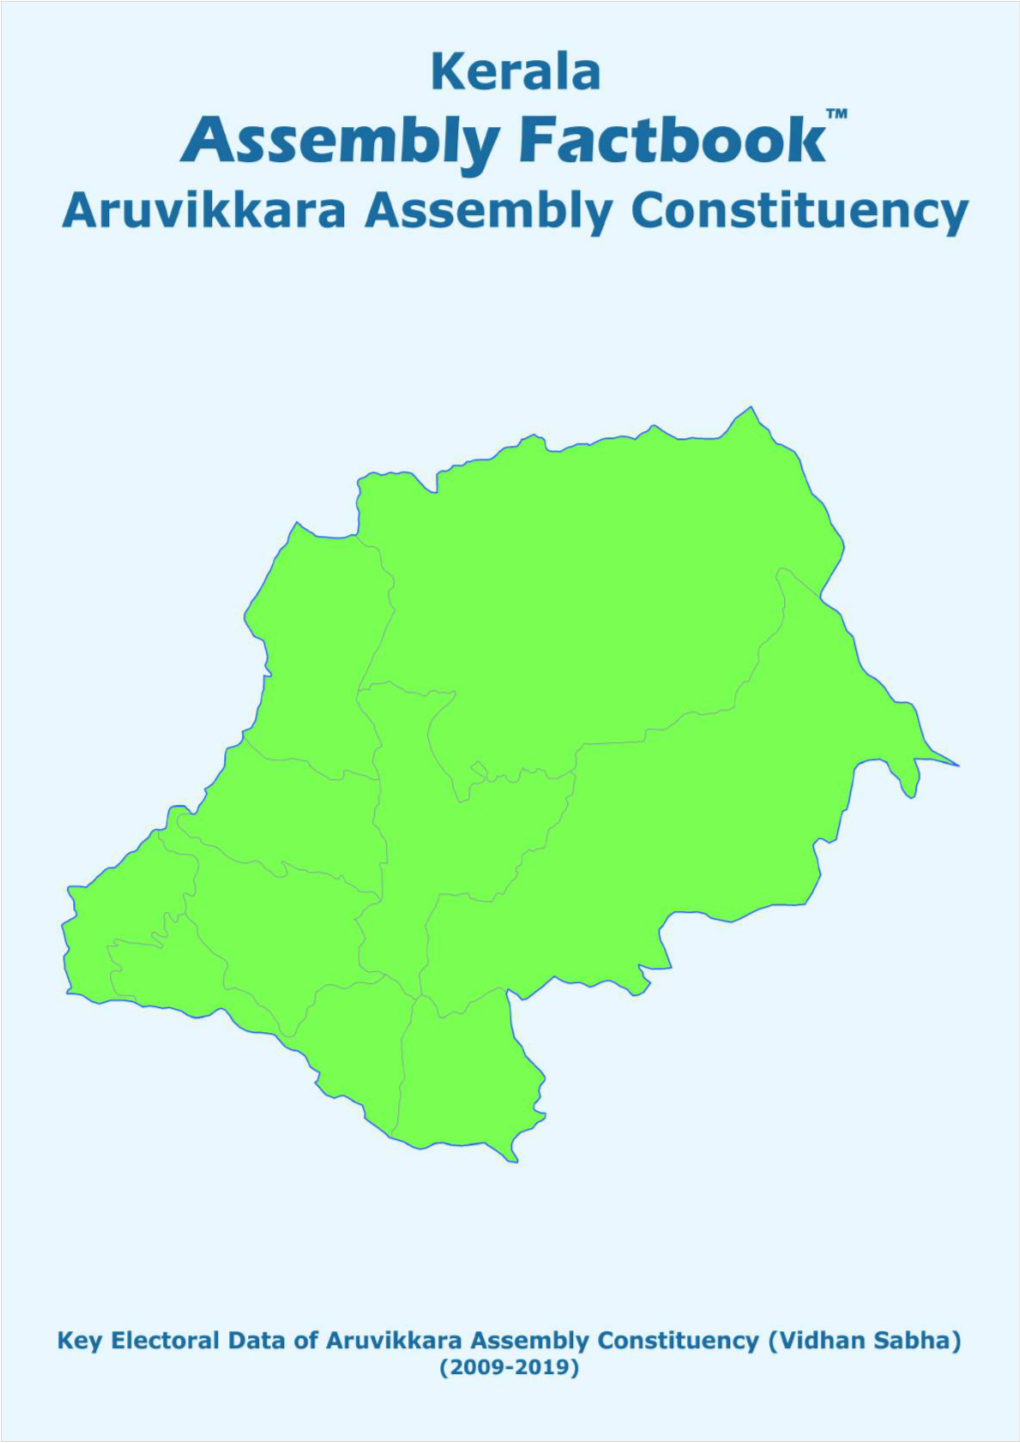 Aruvikkara Assembly Kerala Factbook